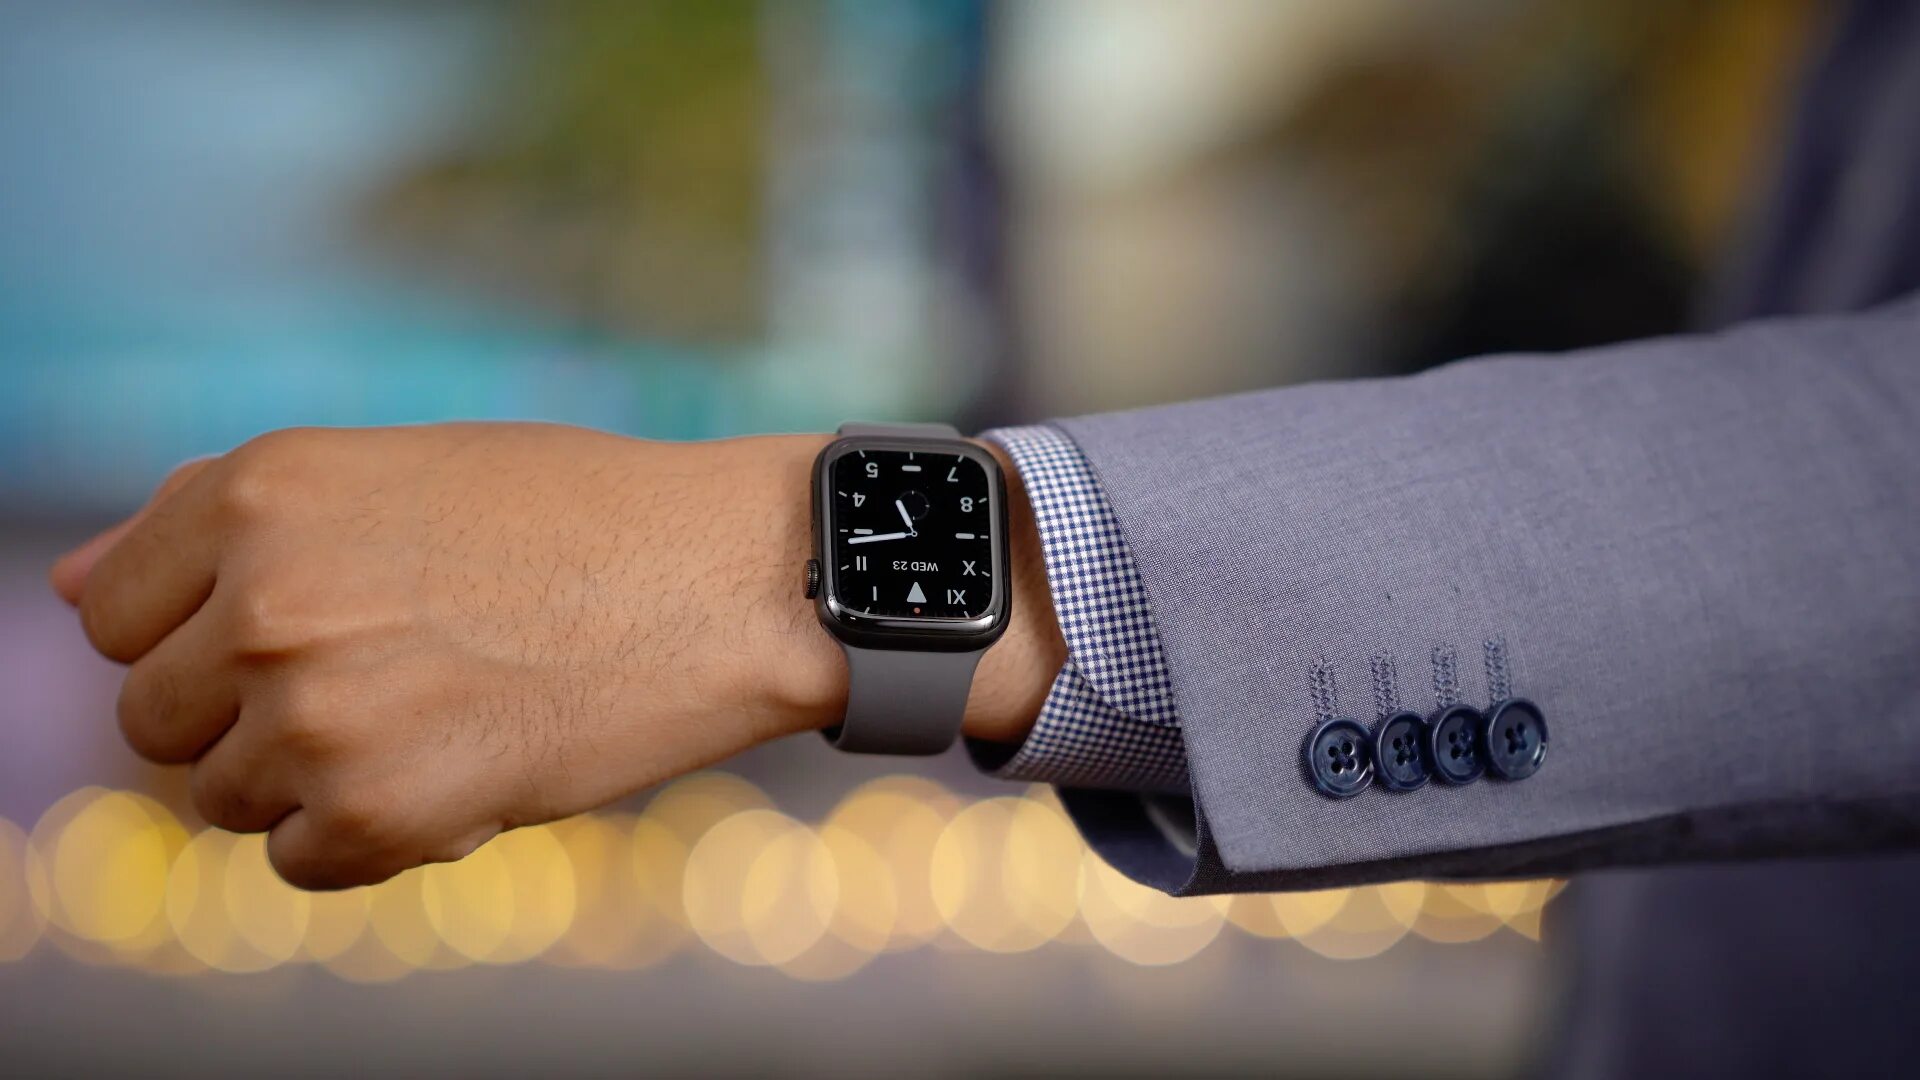 6 41 мм. Apple watch se 44mm на руке. Apple watch 7. Apple watch 44mm. Apple watch Series 7.